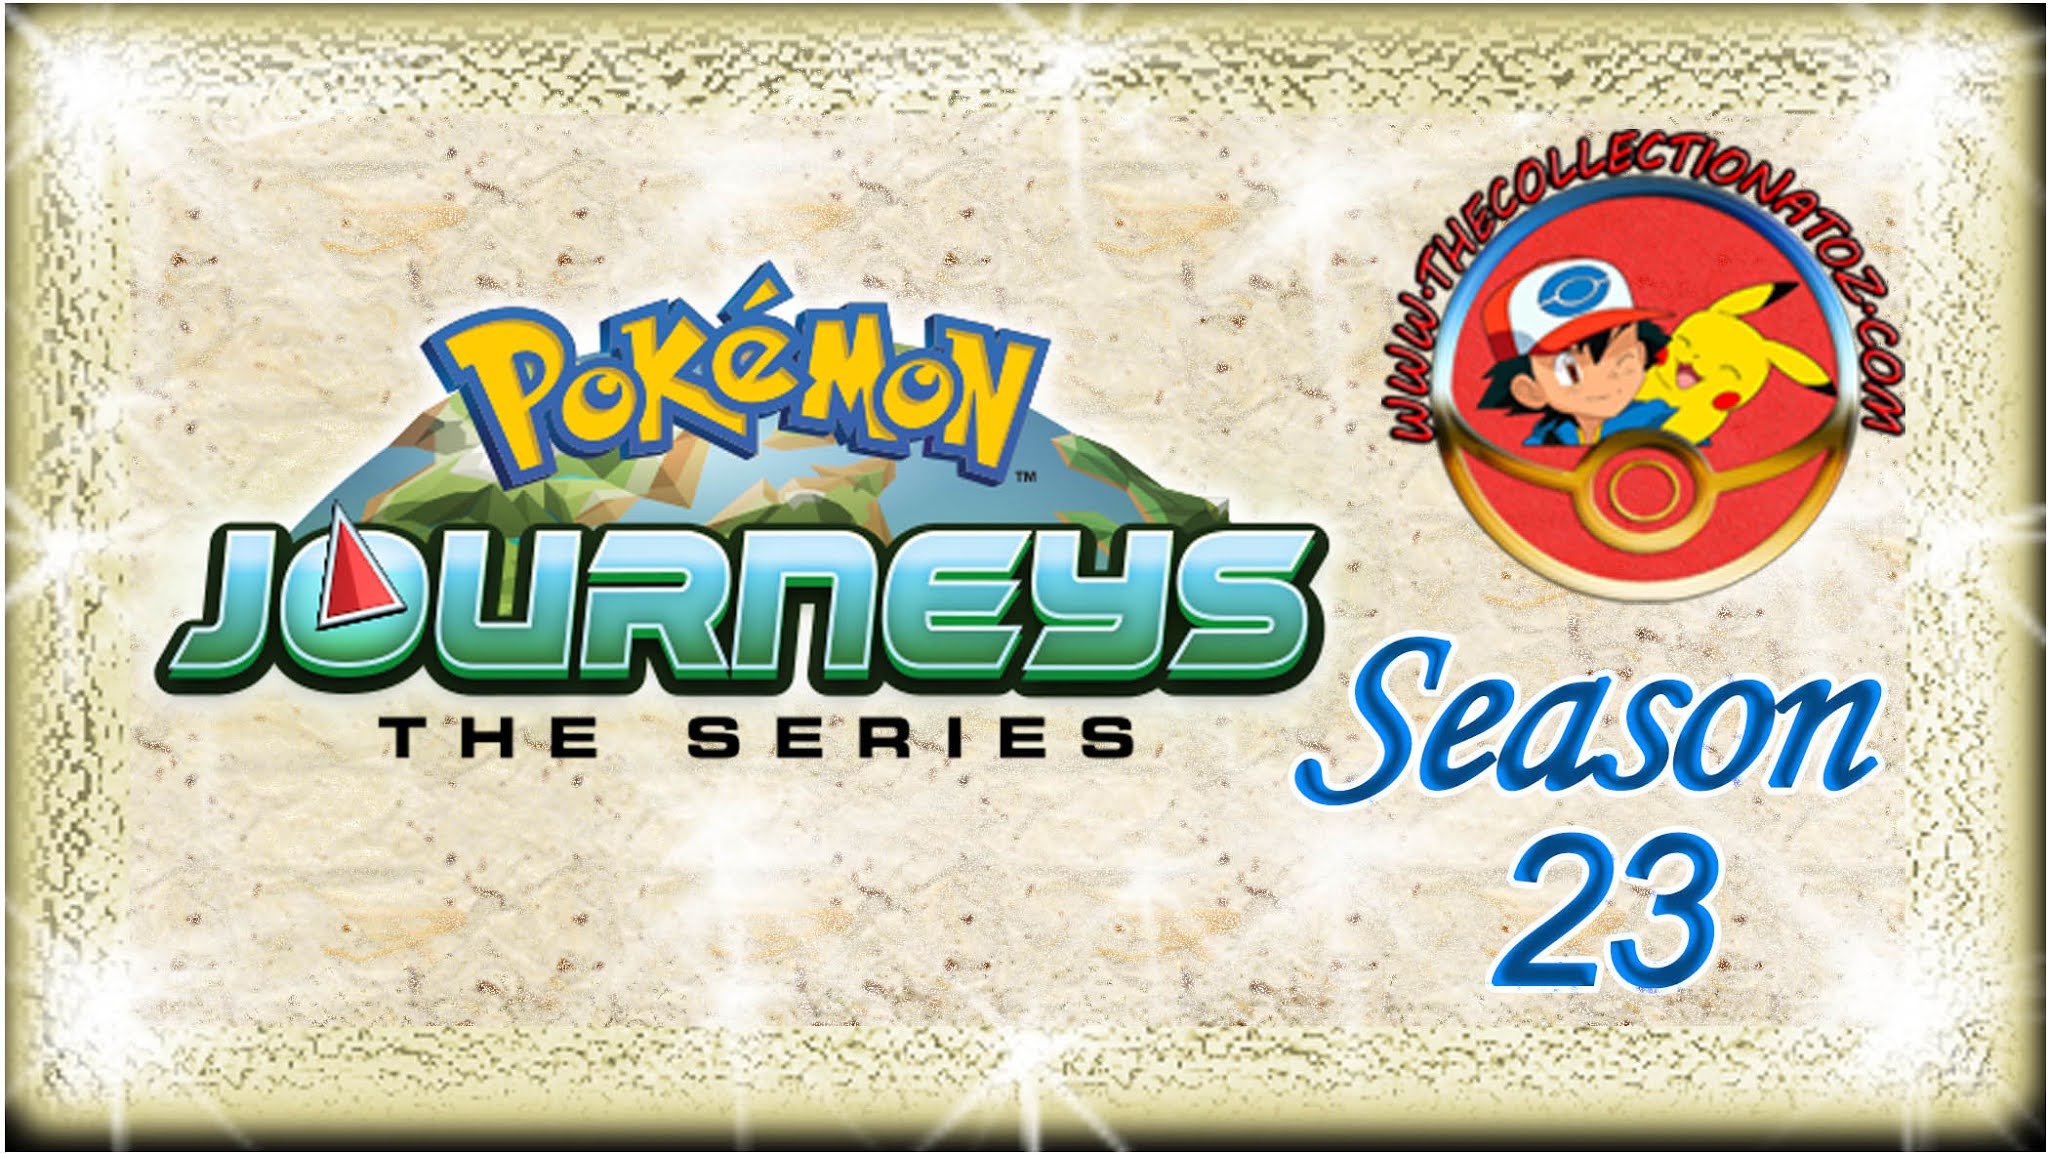 Pokemon The Series: Journeys (Season 23)